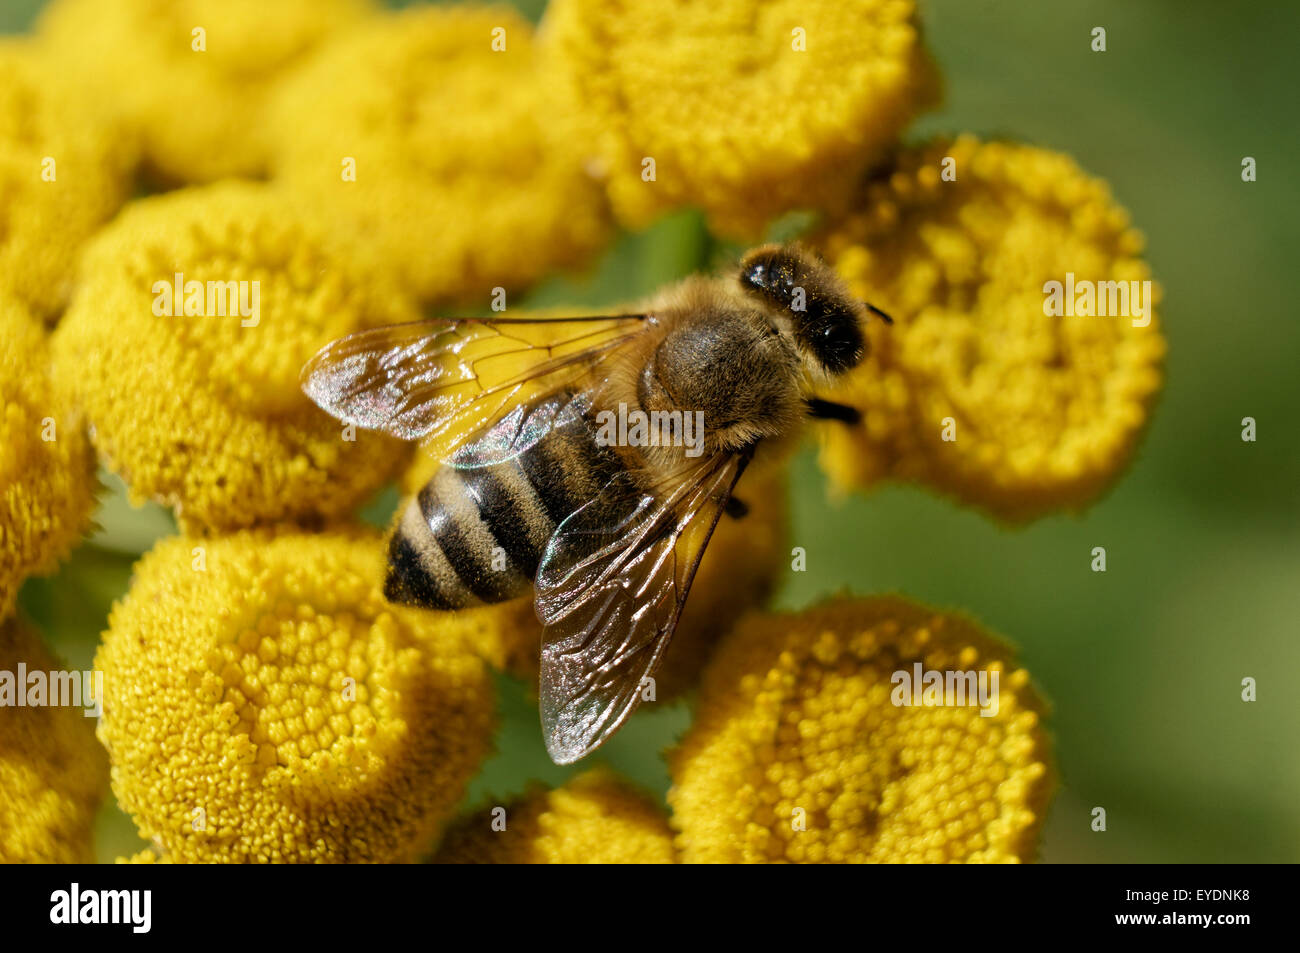 Eine westliche Honigbiene oder Europäischen Honigbiene sammeln Pollen auf gemeinsame Rainfarn (Tanacetum vulgare) Blumen, Vancouver, BC, Kanada Stockfoto